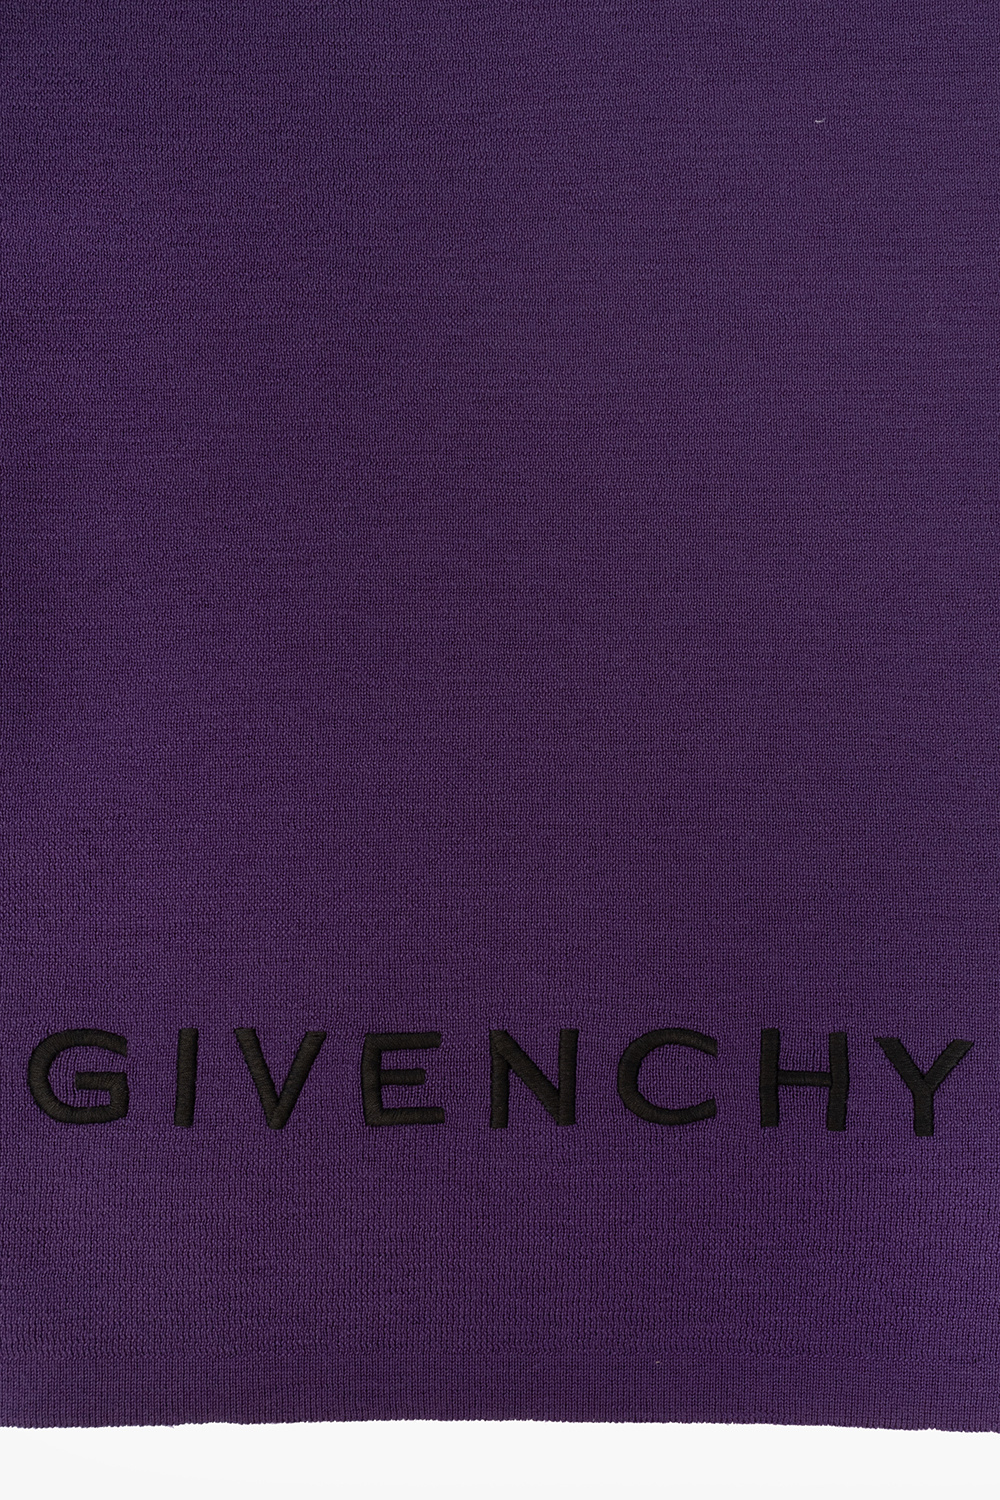 Givenchy x Josh Smith Devil Tee Givenchy